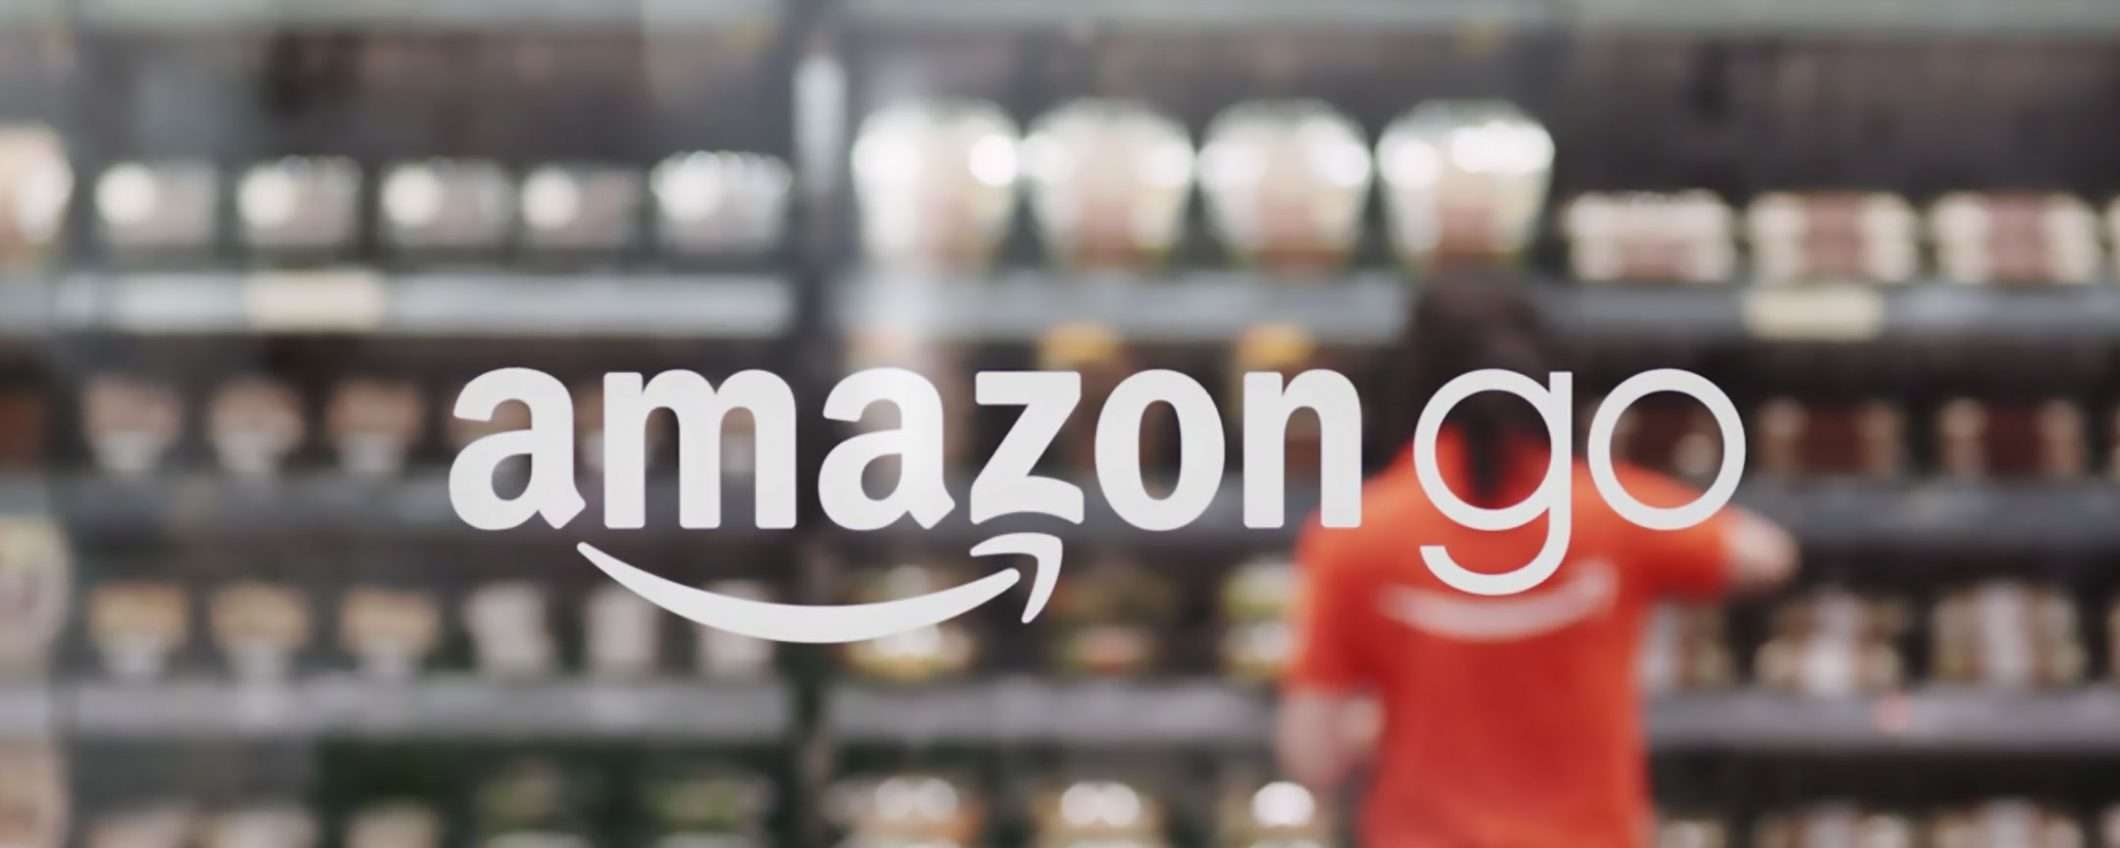 Amazon Go: negozi senza cassa, sempre più grandi